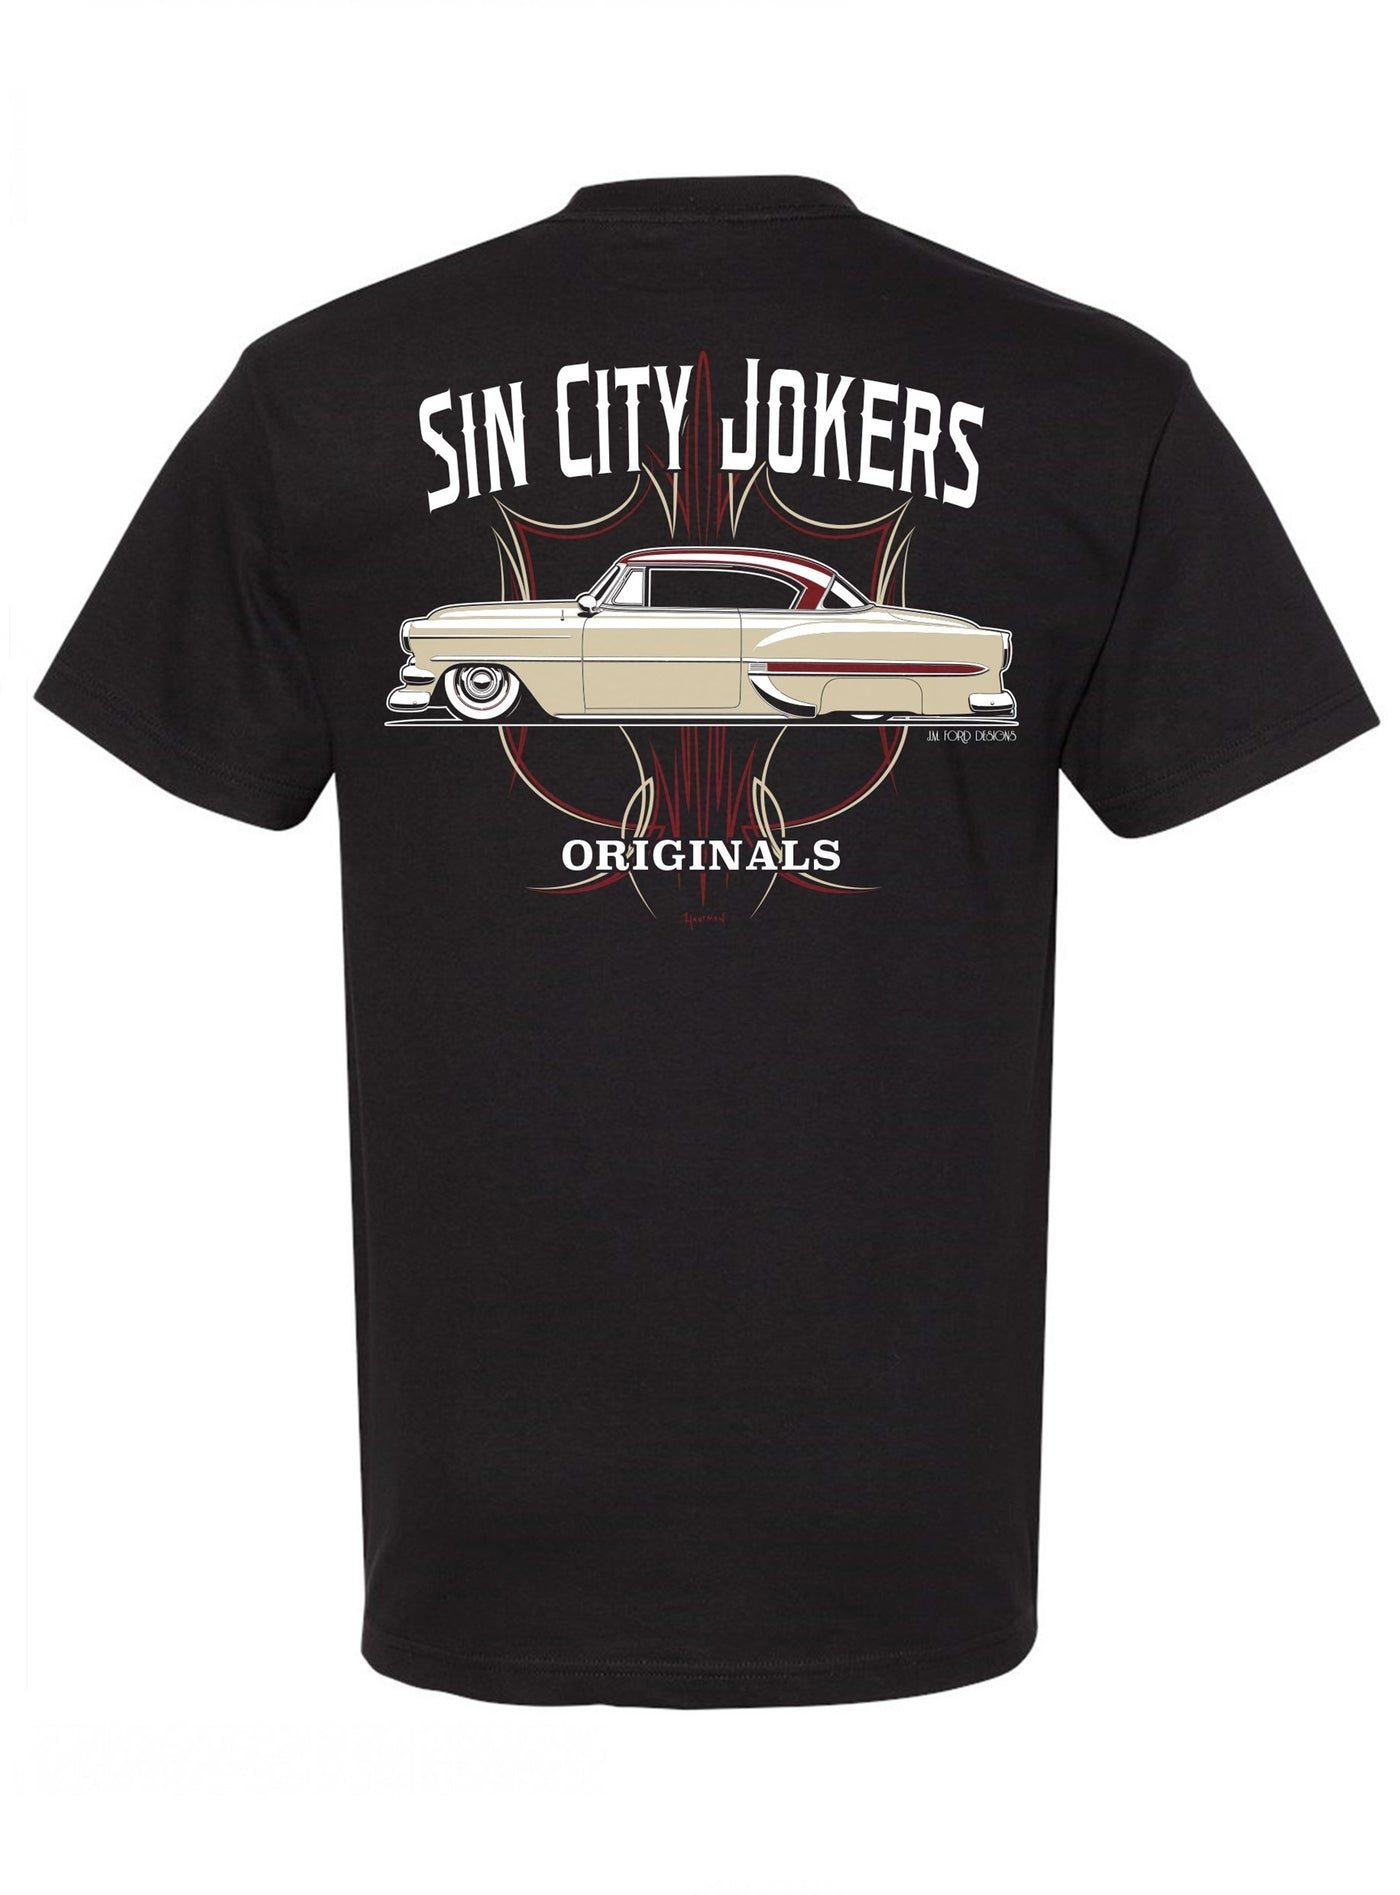 Sin City Jokers Originals '54 Men's Tee